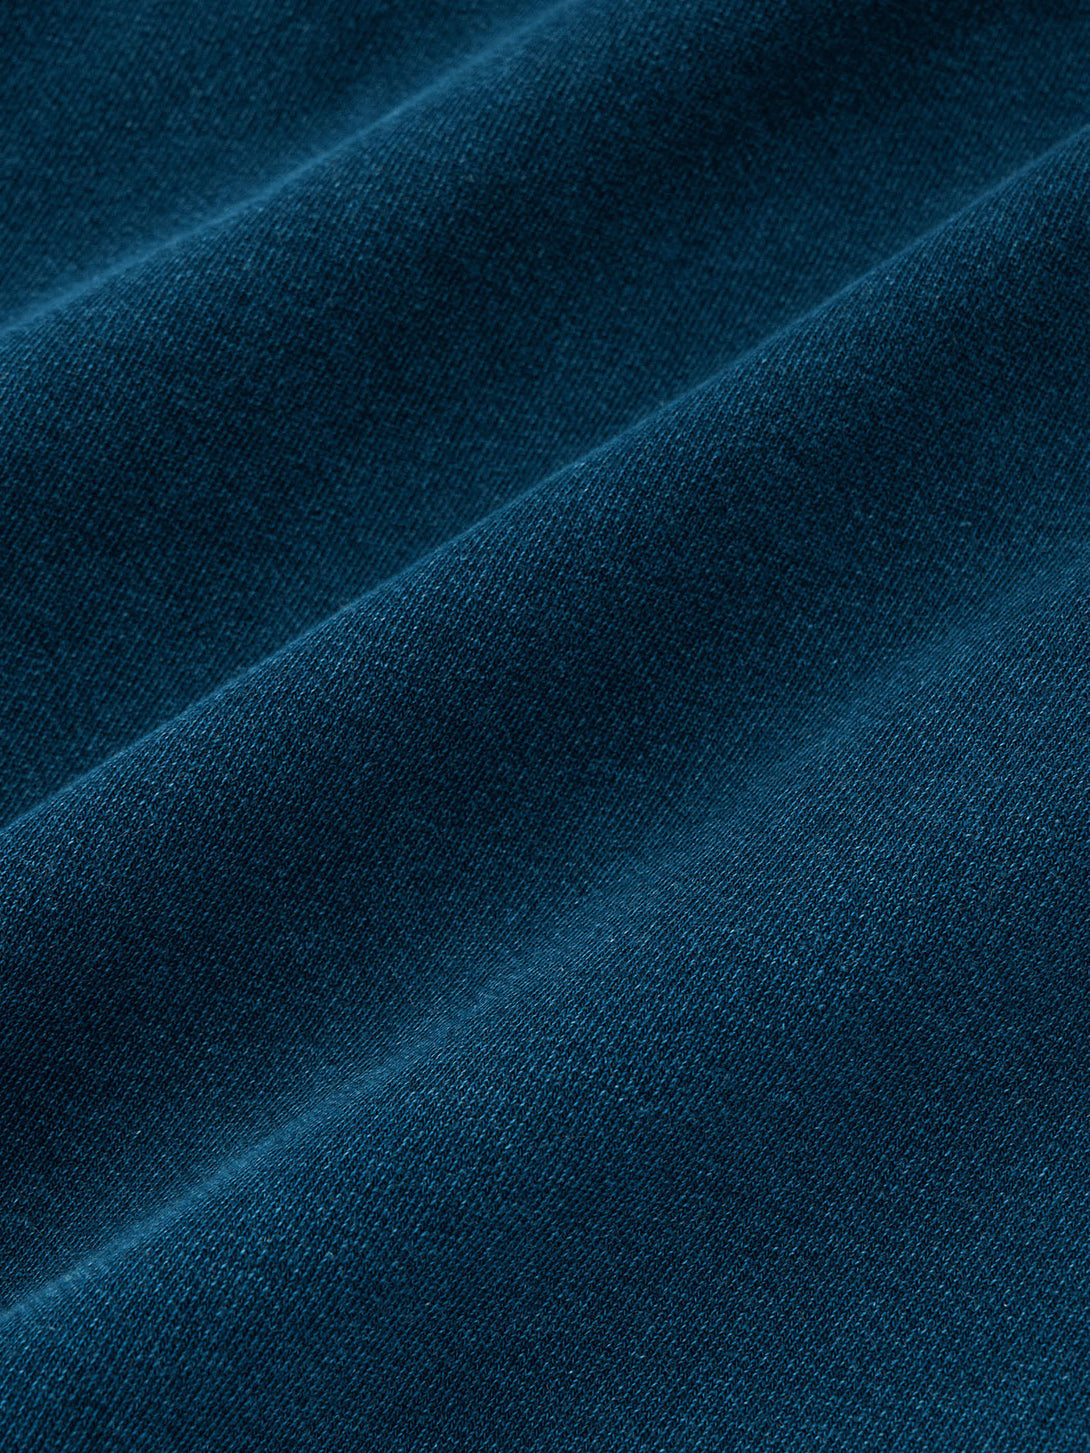 ウォッシュ加工が施された藍染めスウェットプルパーカの前面、紐付きデザインでレイヤー感を強調